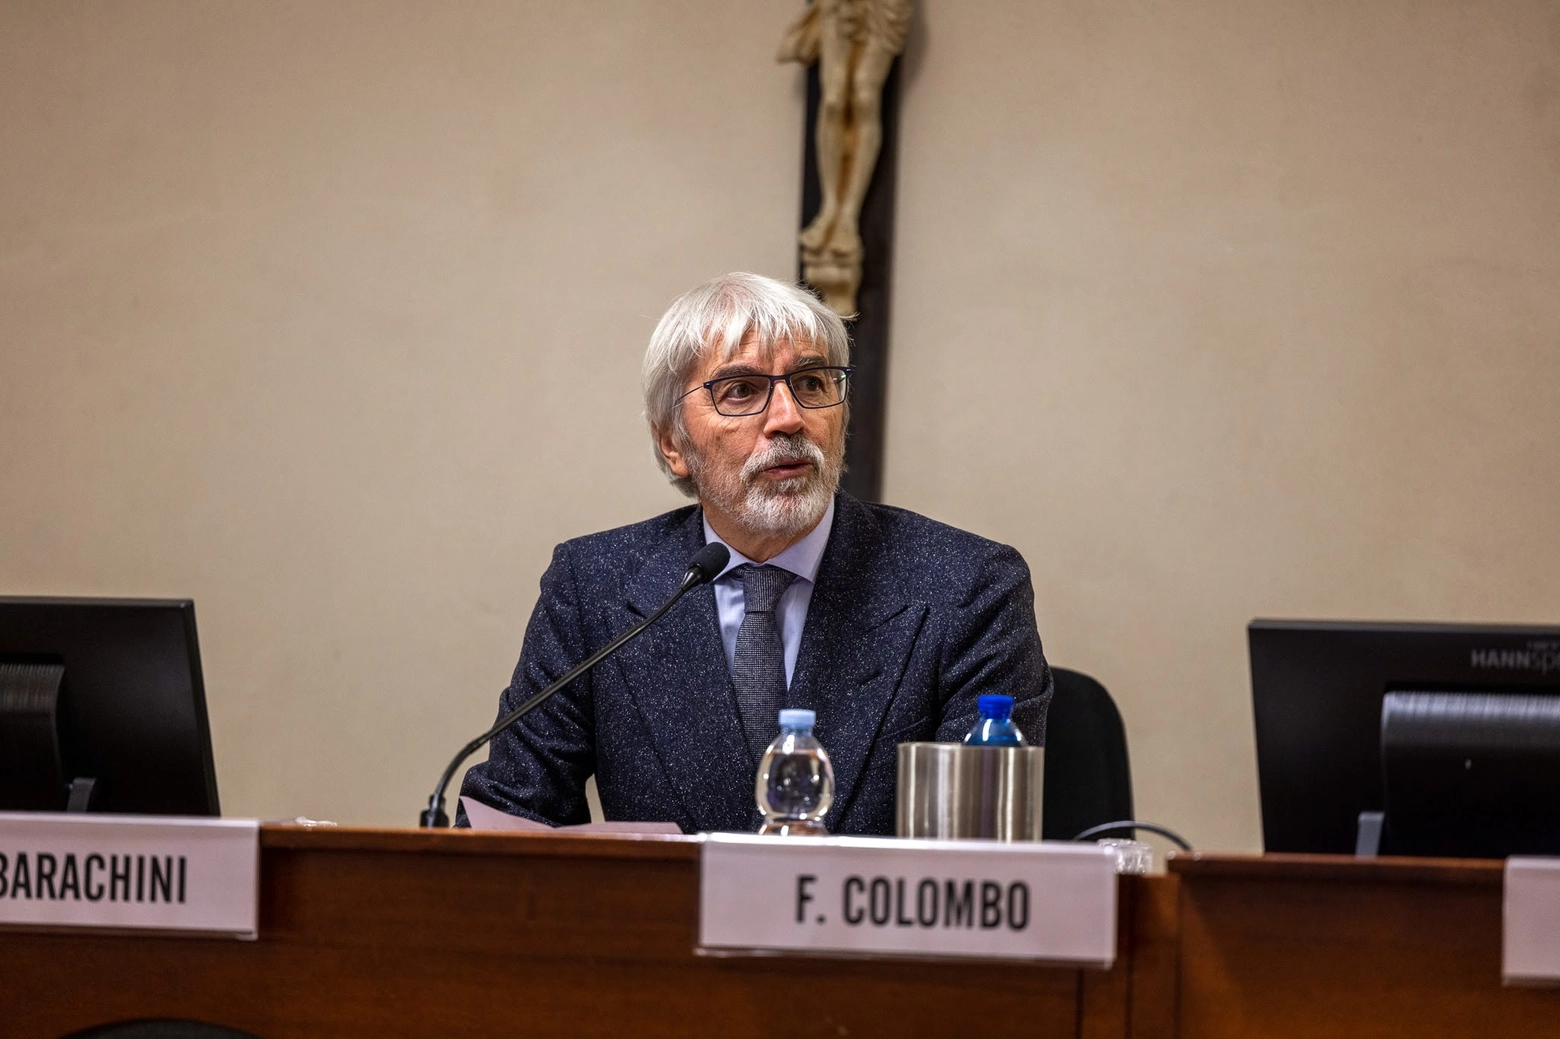 Fausto Colombo, prorettore, delegato alle Attività di comunicazione e promozione dell’immagine dell’Università Cattolica